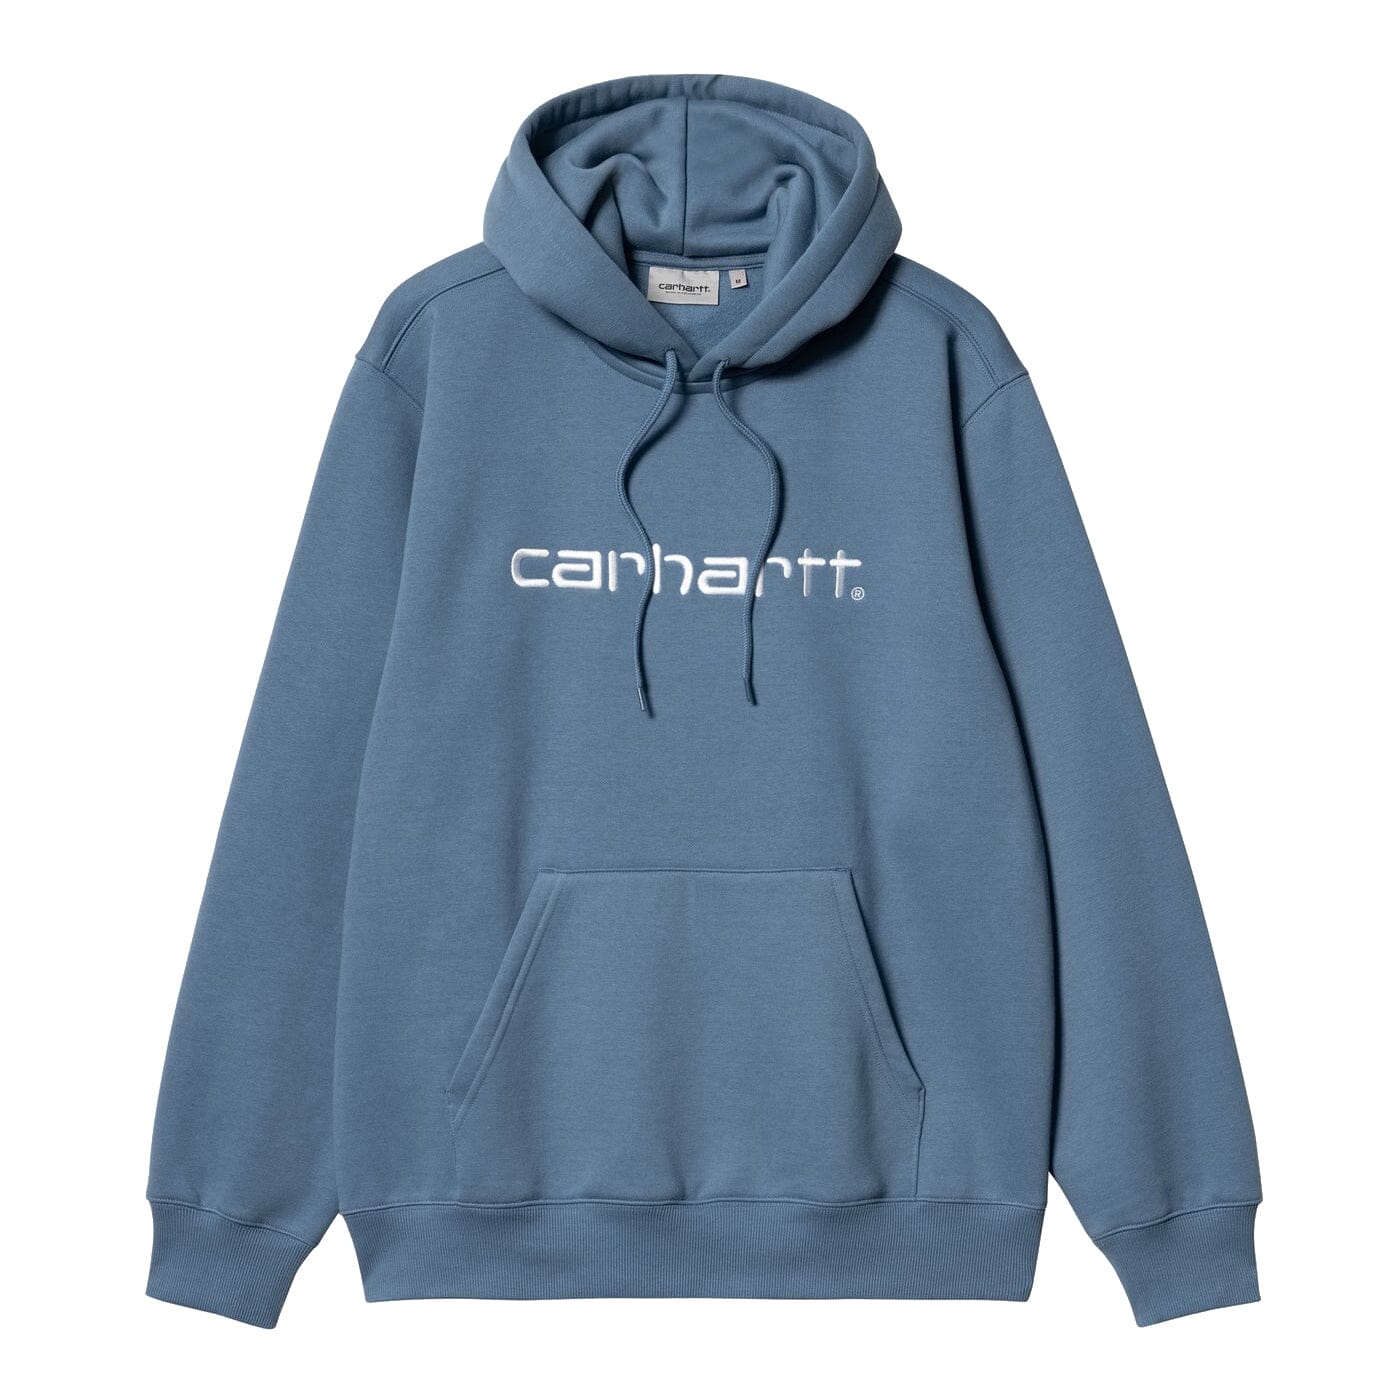 Carhartt WIP Hooded Carhartt Sweatshirt Sorrent / White hoodies Carhartt WIP 